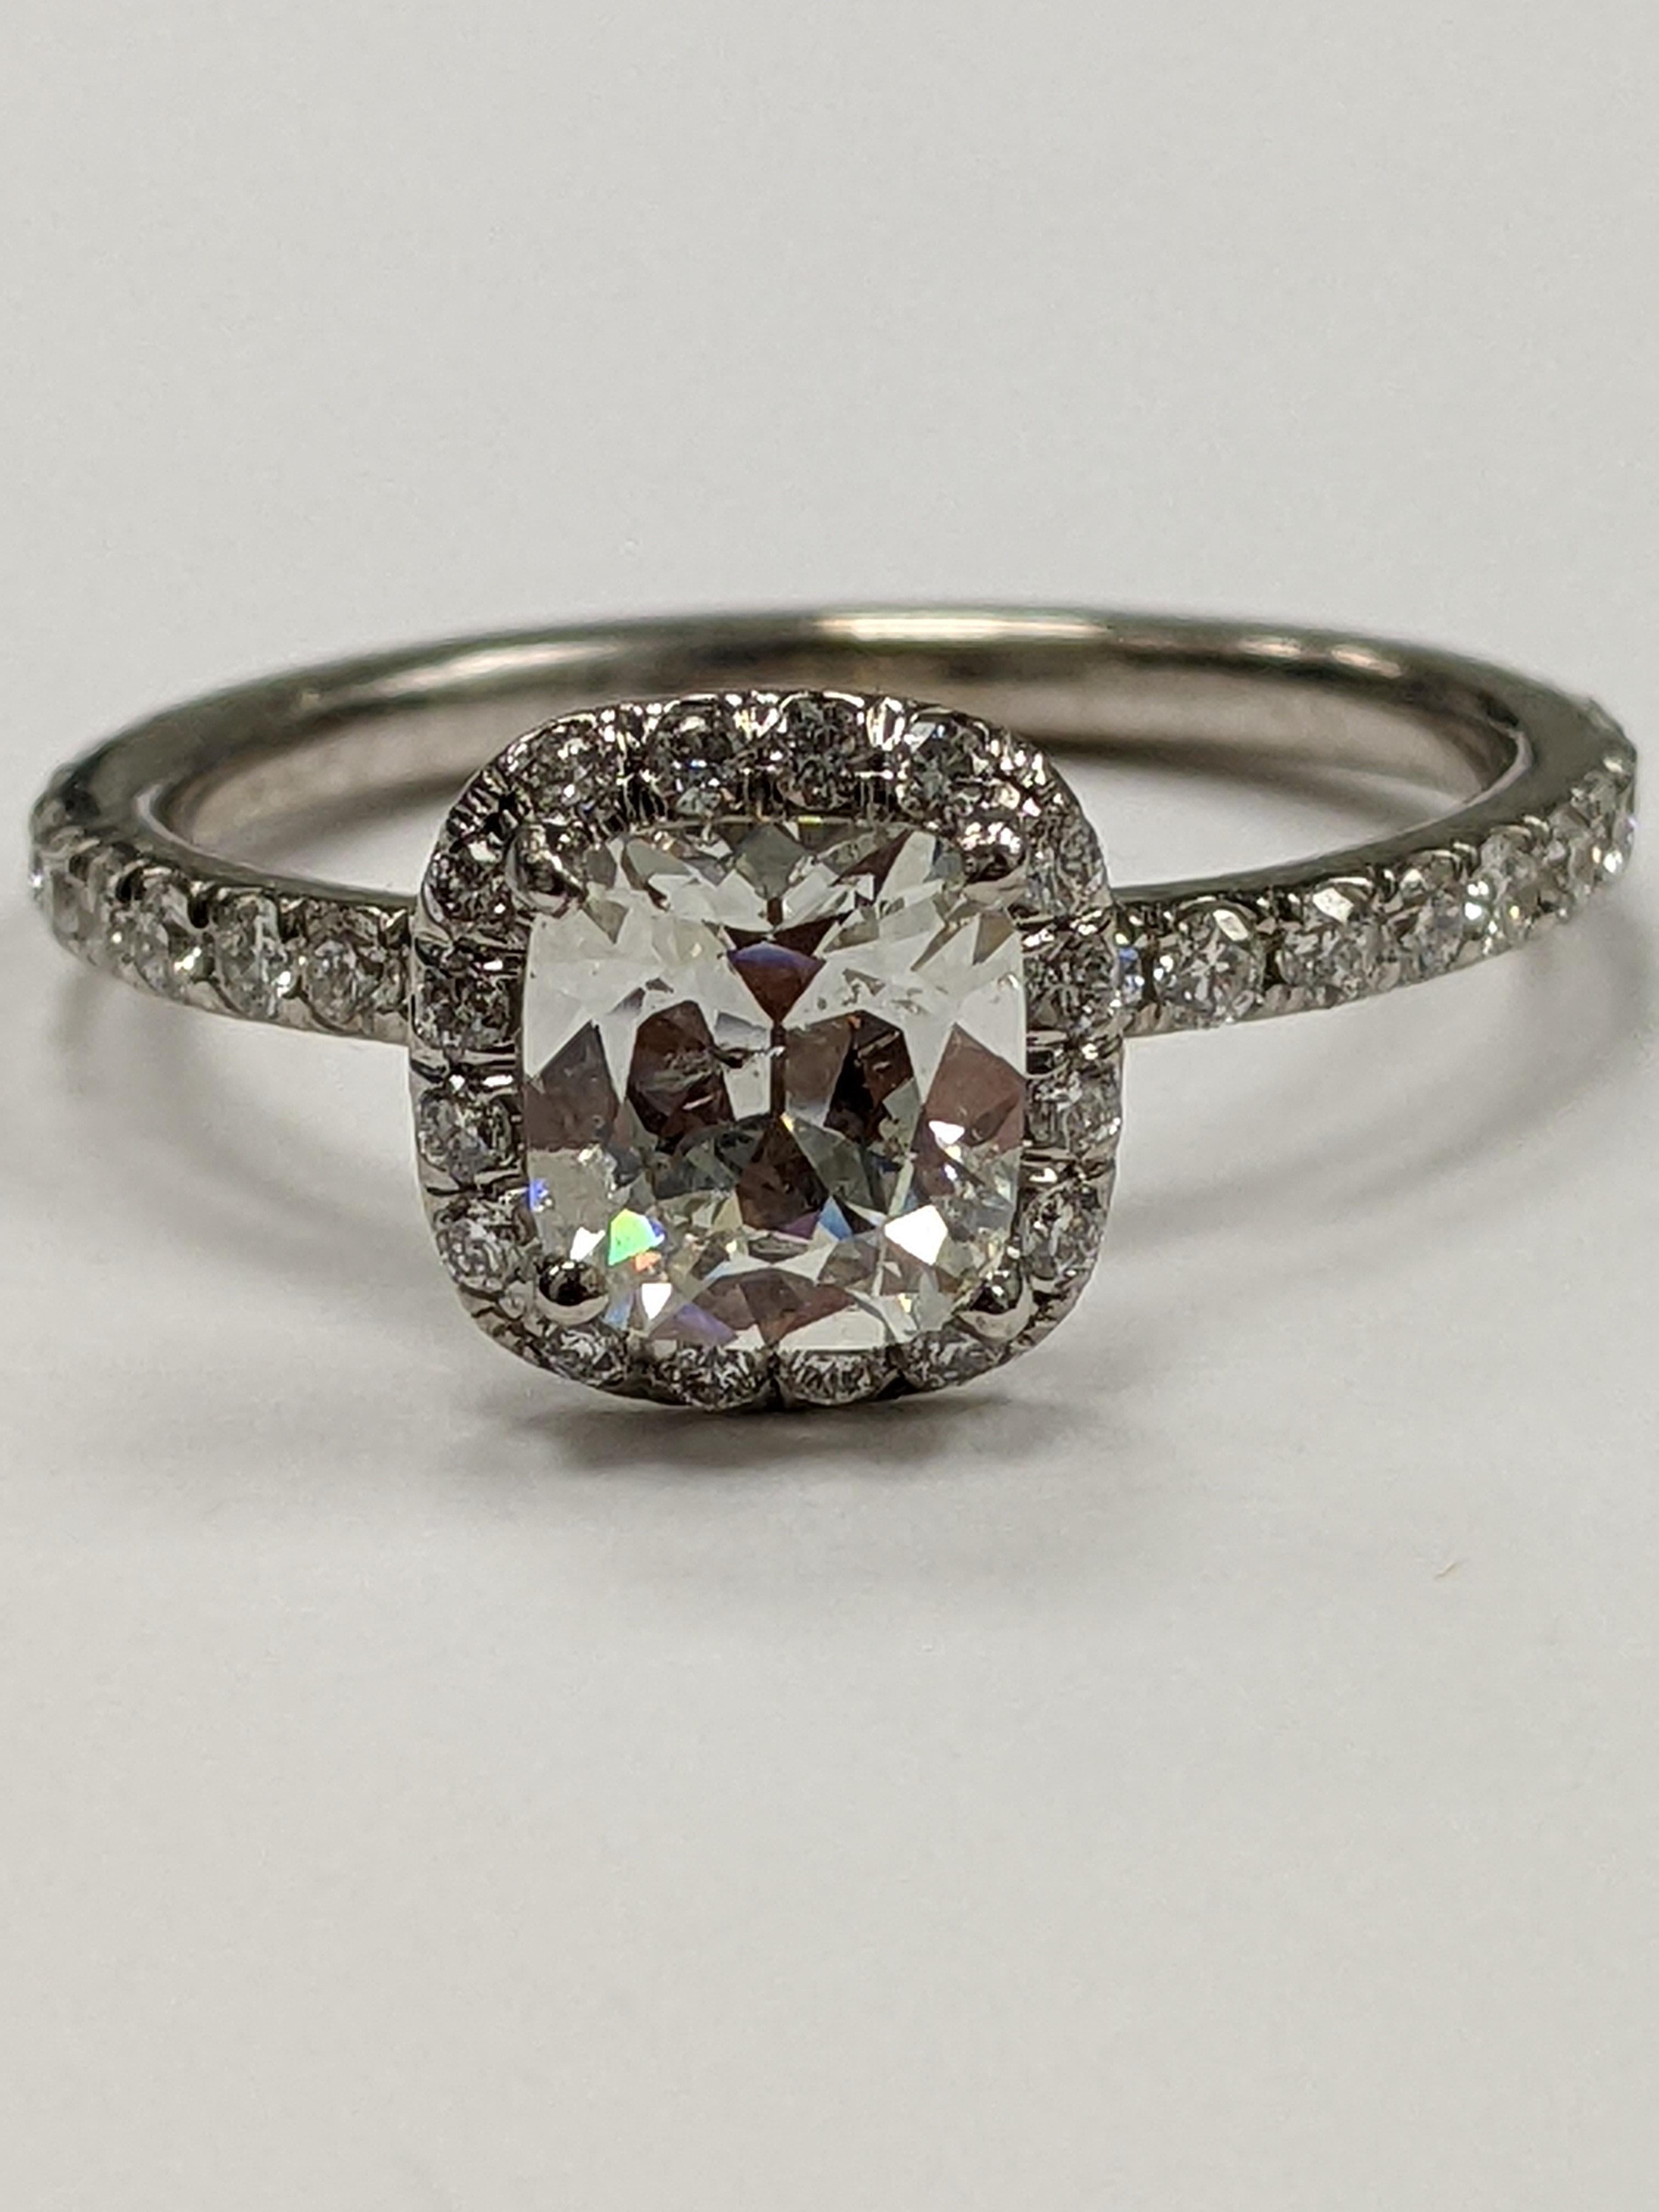 0,82 Cushion in Farbe G, Reinheit SI-2 (AGS-Zertifikat auf Anfrage), montiert in einem eleganten Ring.  Die Fassung besteht aus 18 Kt Weißgold, und der Mittelstein ist von einem Halo aus kleinen Diamanten umgeben, der auch in den Schaft hineinreicht